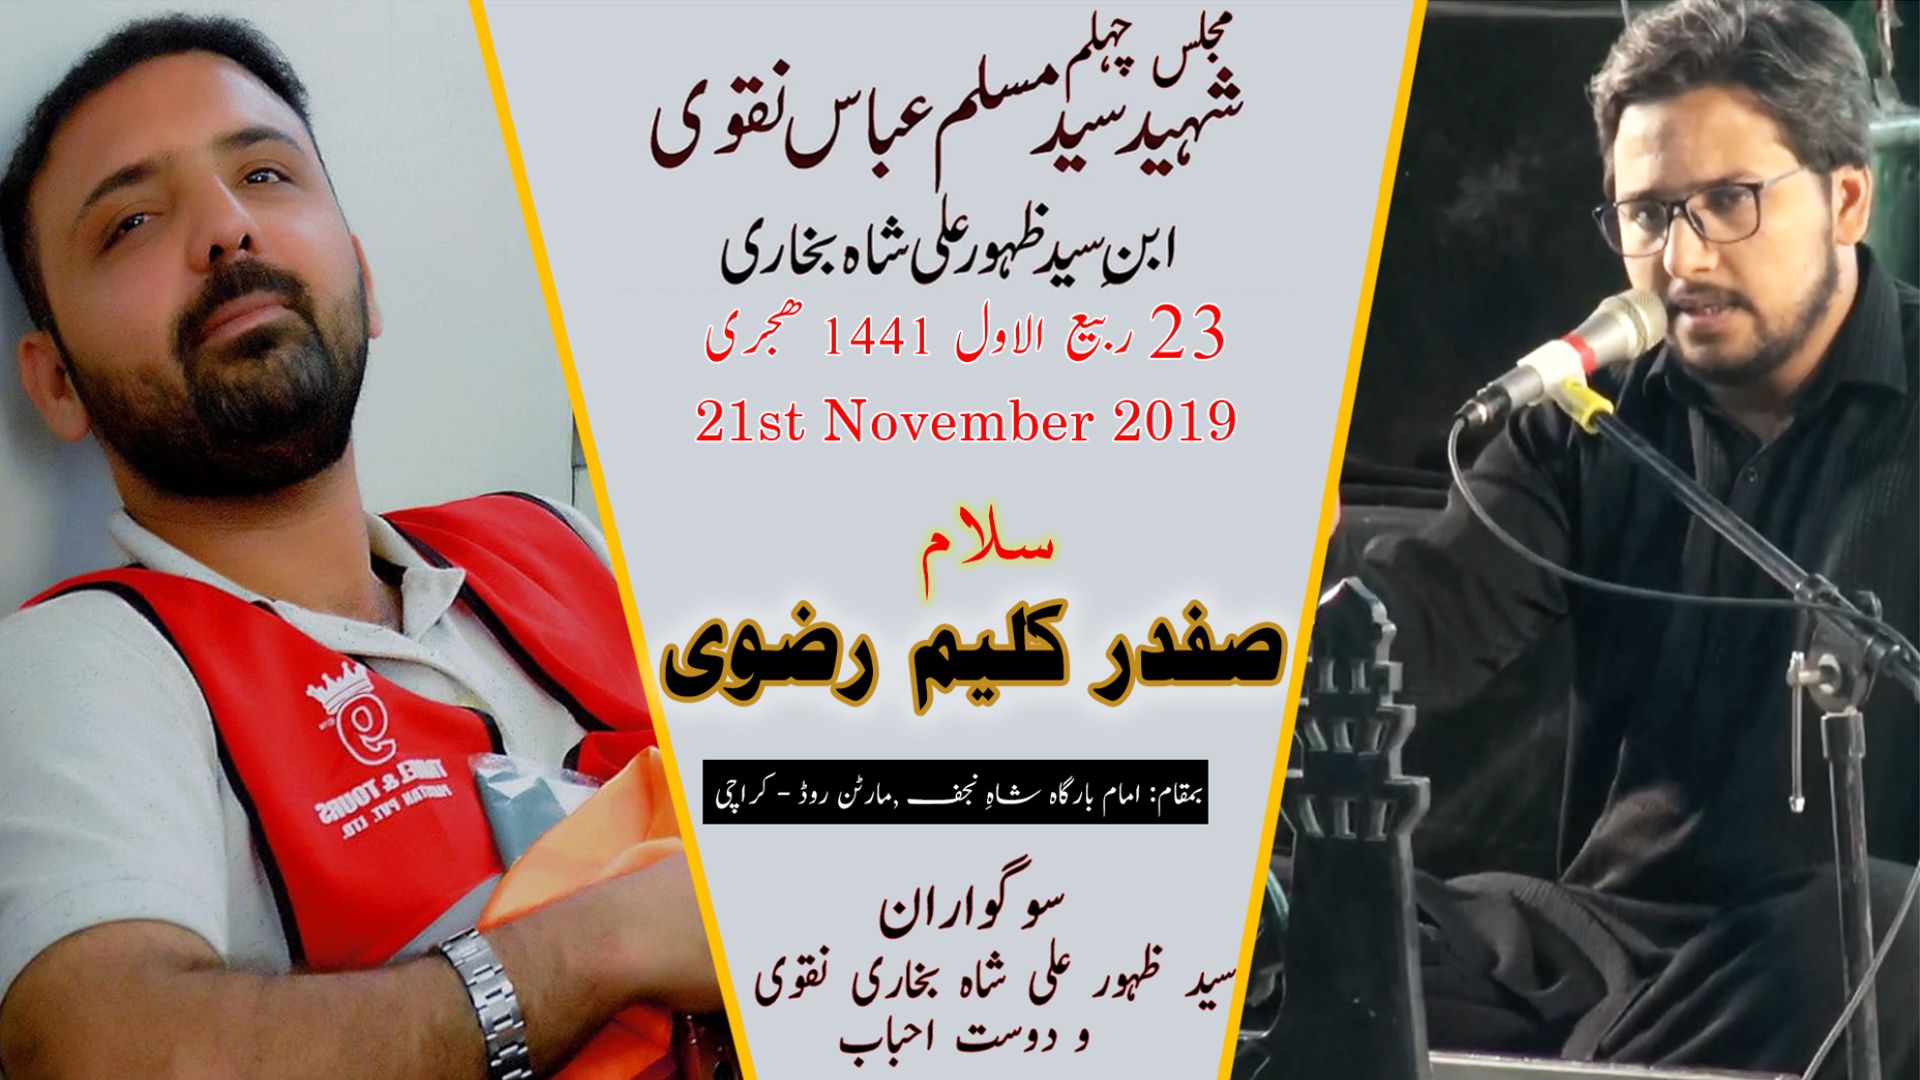 Salam | Safdar Kaleem | 21st November 2019 - Imam Bargah Shah-e-Najaf - Martan Road - Karachi